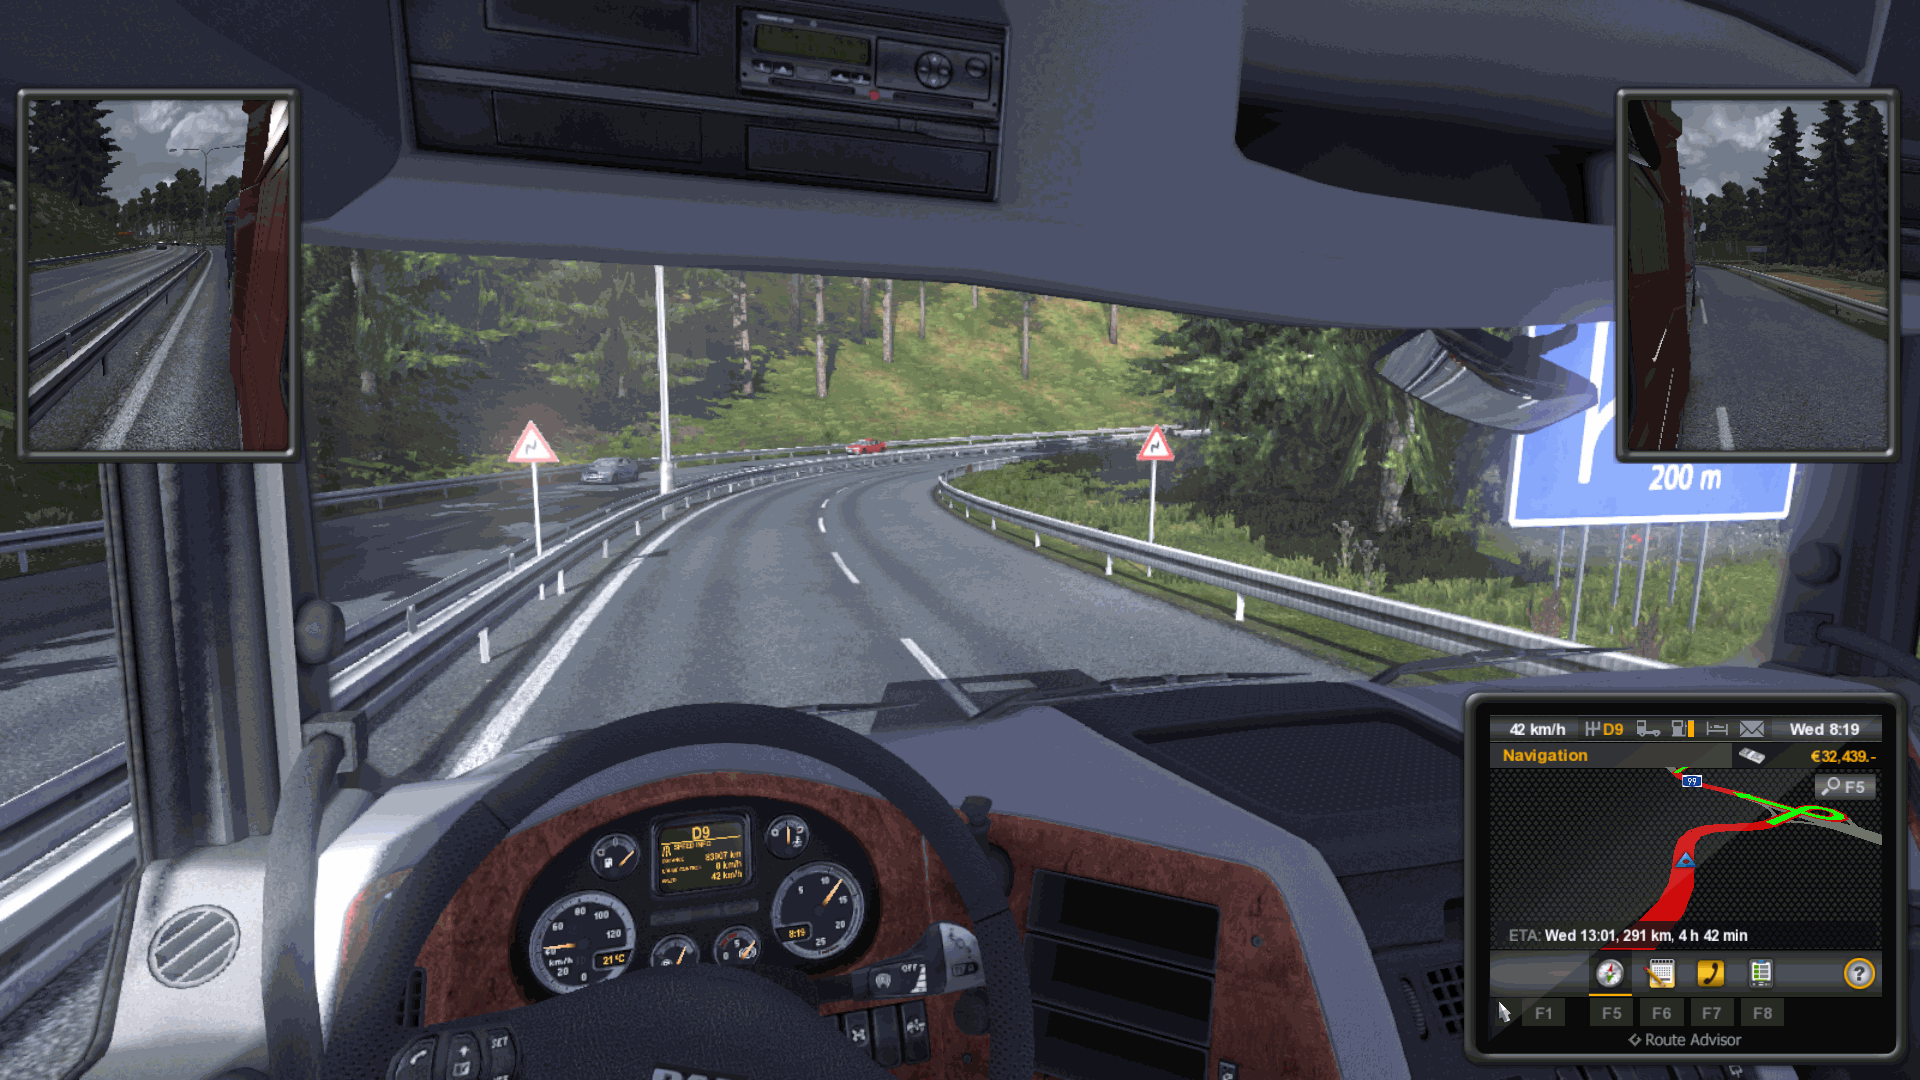 grand truck simulator 2 download